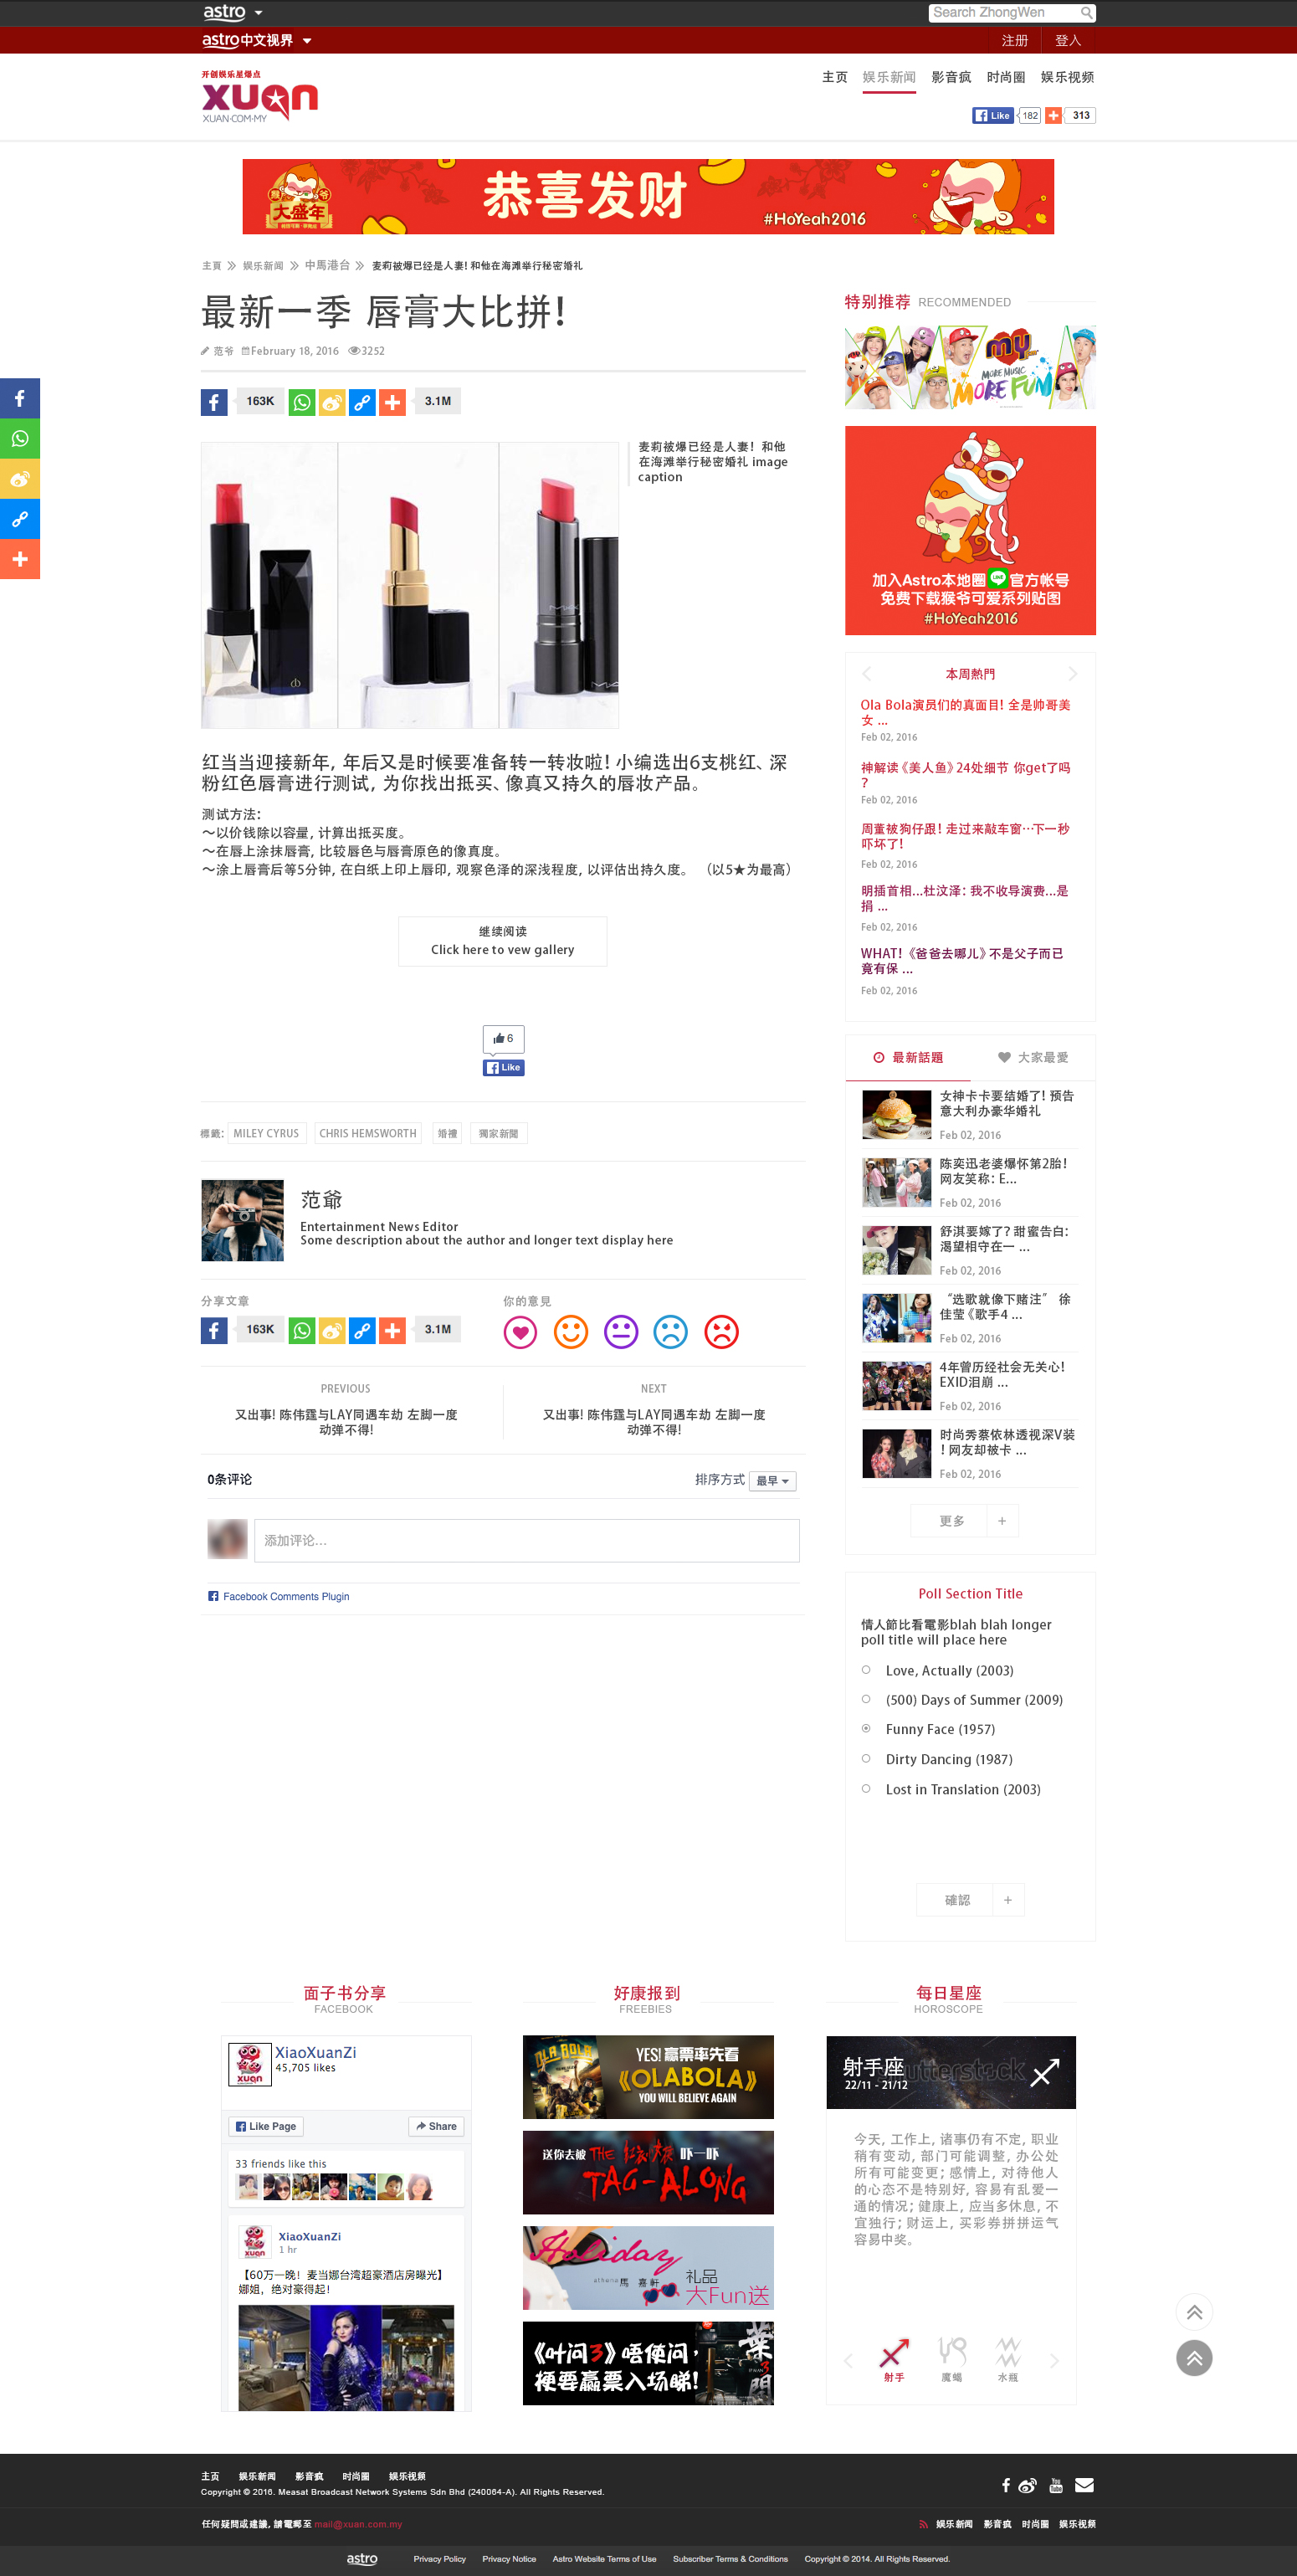 Xuan Website Mocks